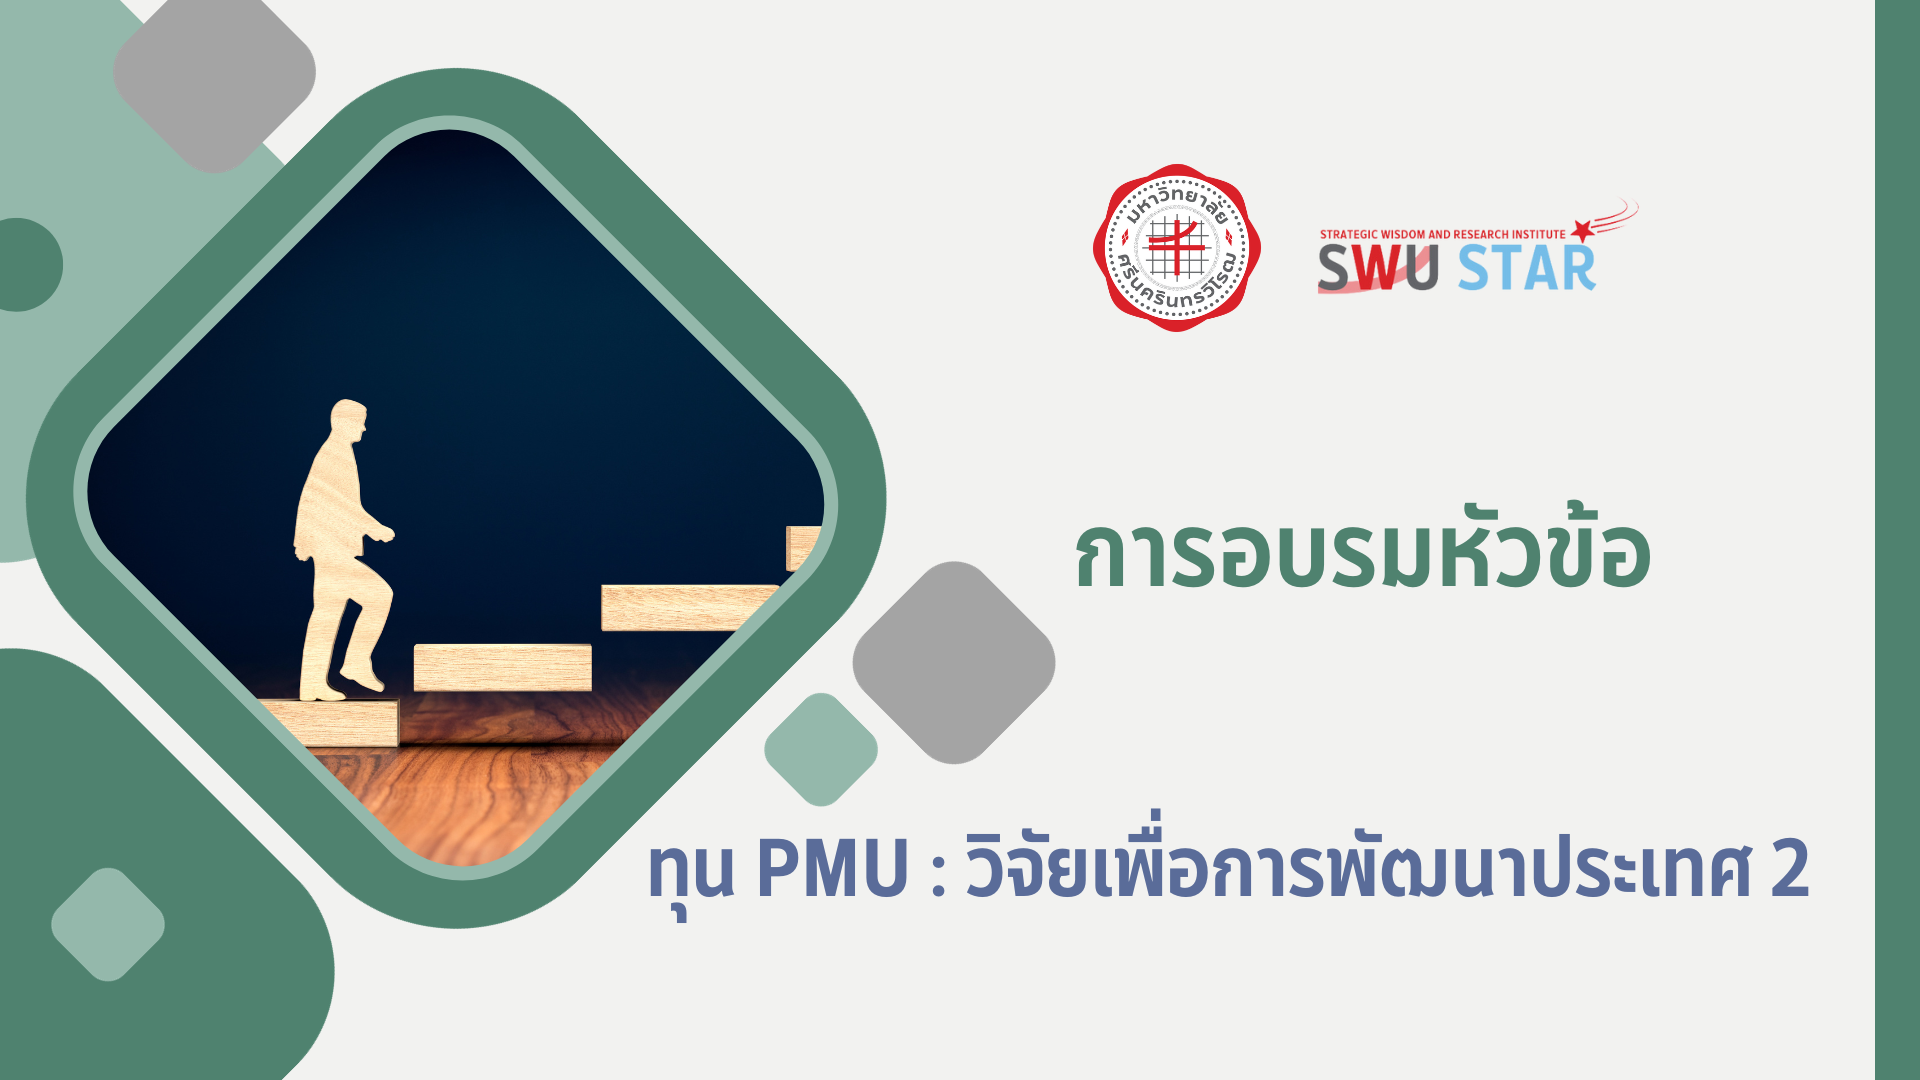 SWU STAR: รู้จักทุน PMU: วิจัยเพื่อการพัฒนาประเทศ 2